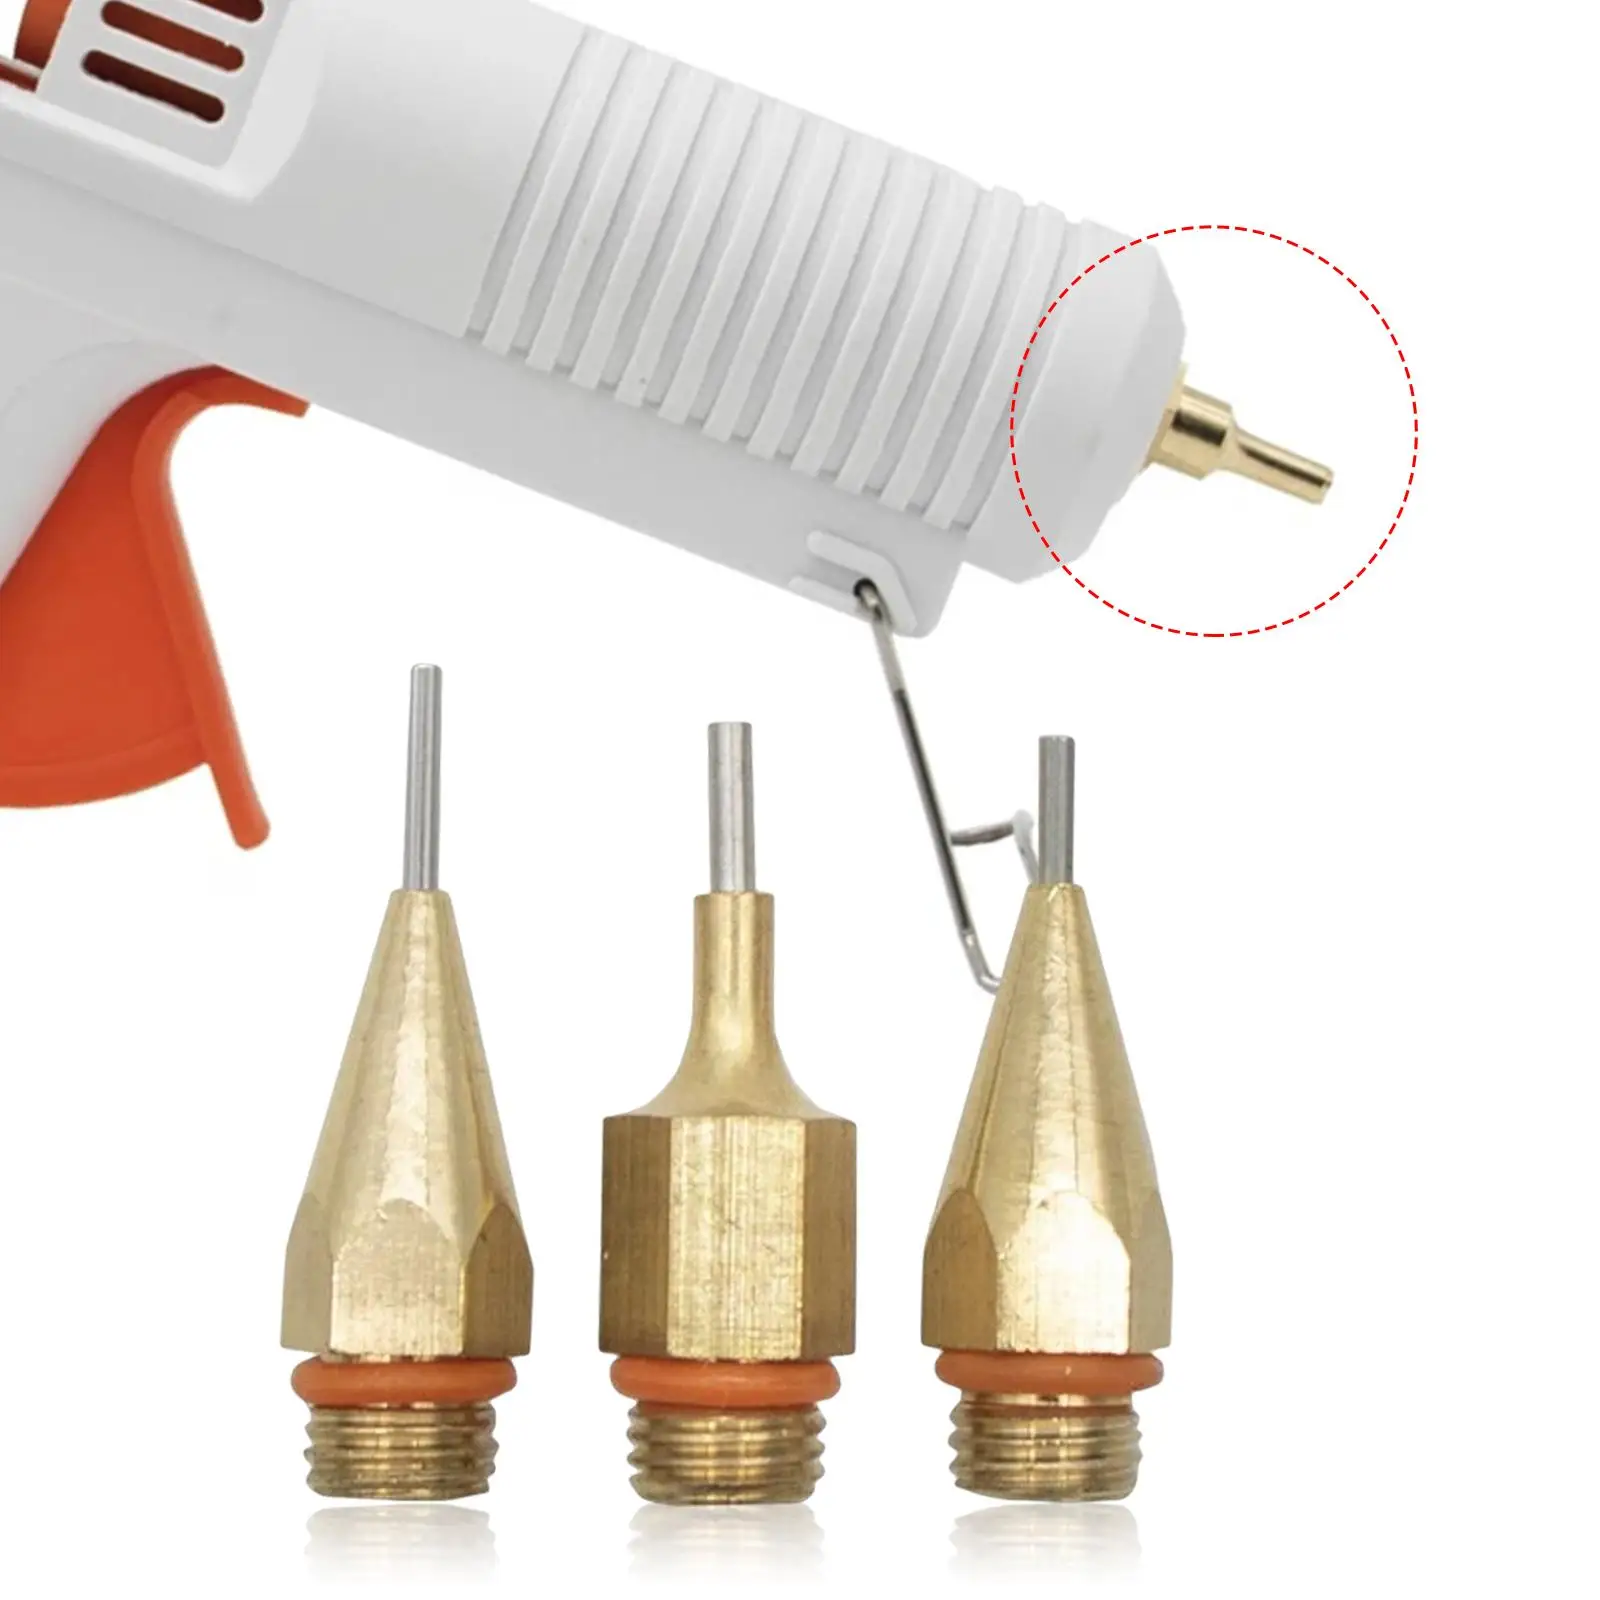 3Pcs Hot Glue Tool Nozzles Replaceable Parts 7/16Inches Thread Copper Nozzle